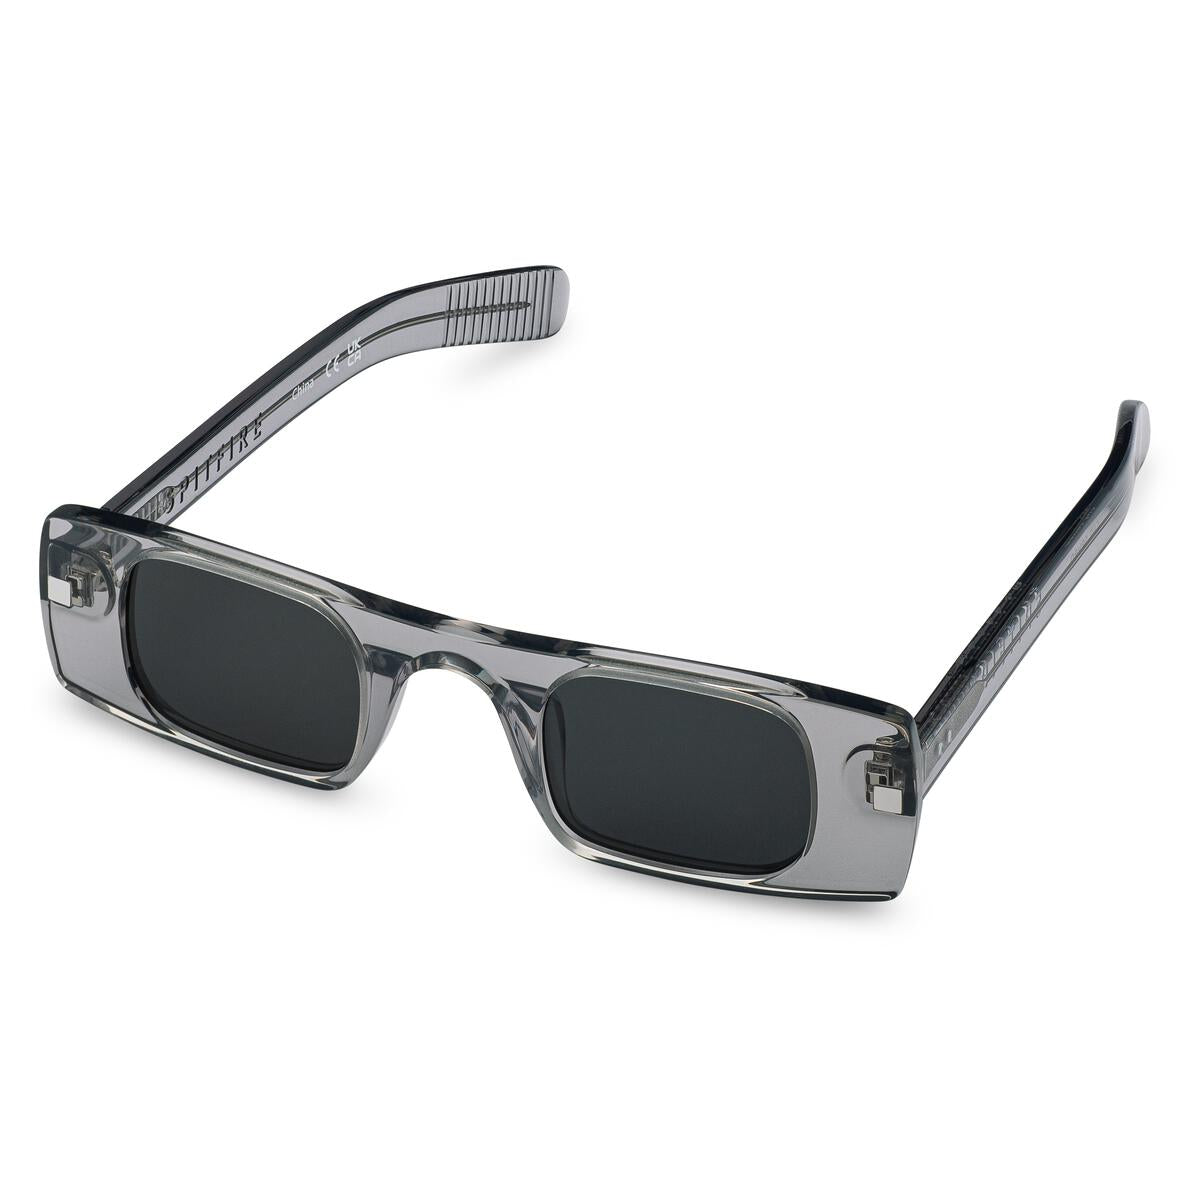 Spitfire Cut Seven Sunglasses Grey/Black